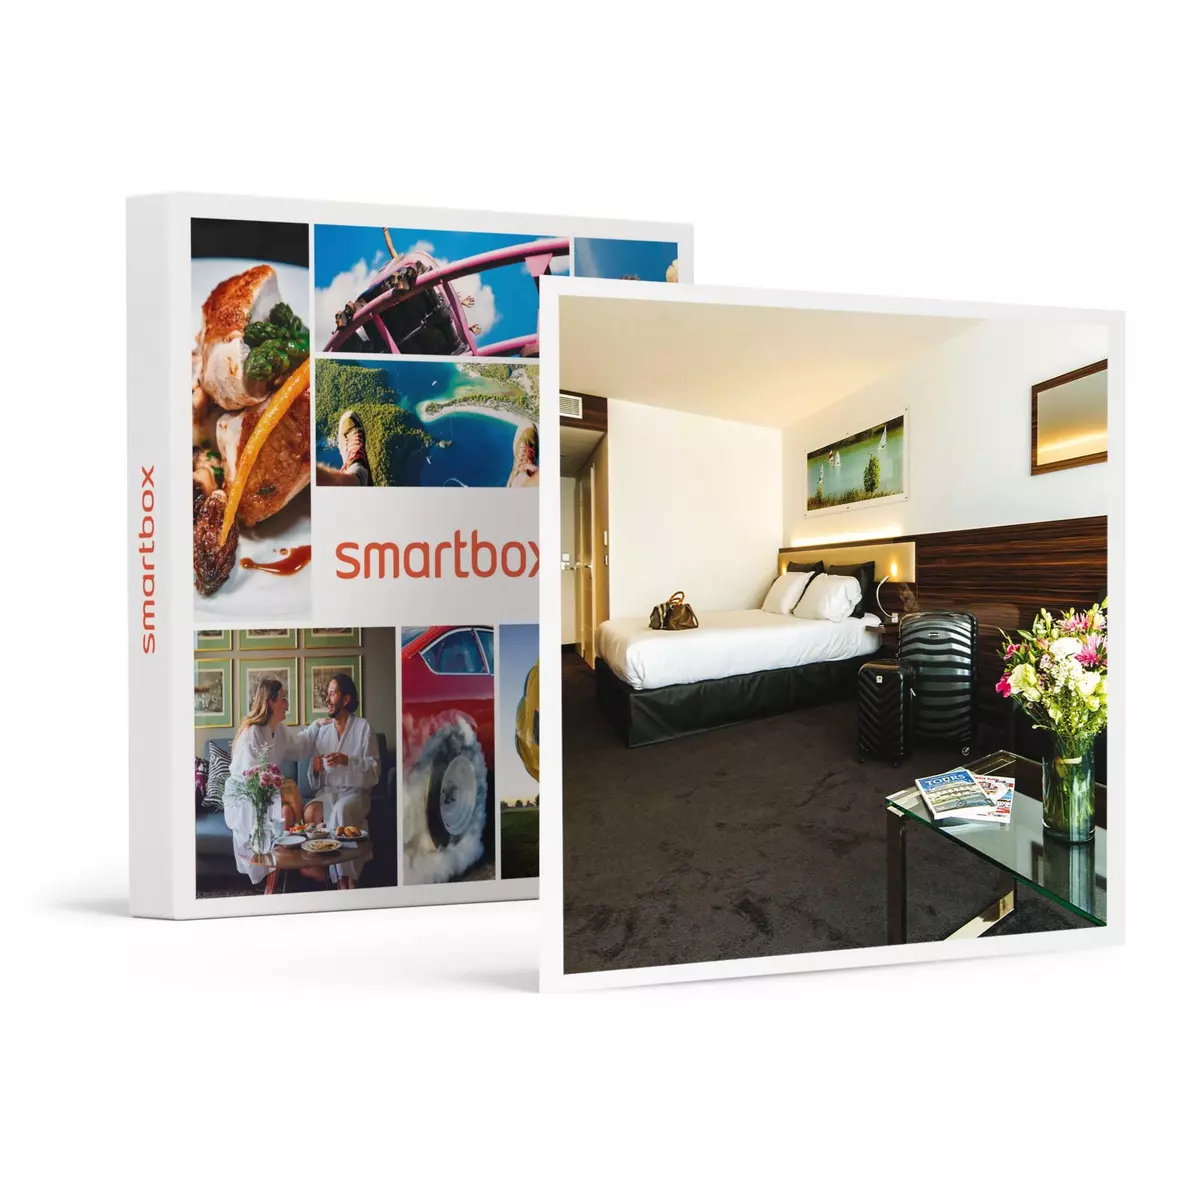 Smartbox Séjour tout confort en hôtel 4* près de Tours avec dîner 4 plats et accès au spa - Coffret Cadeau Séjour